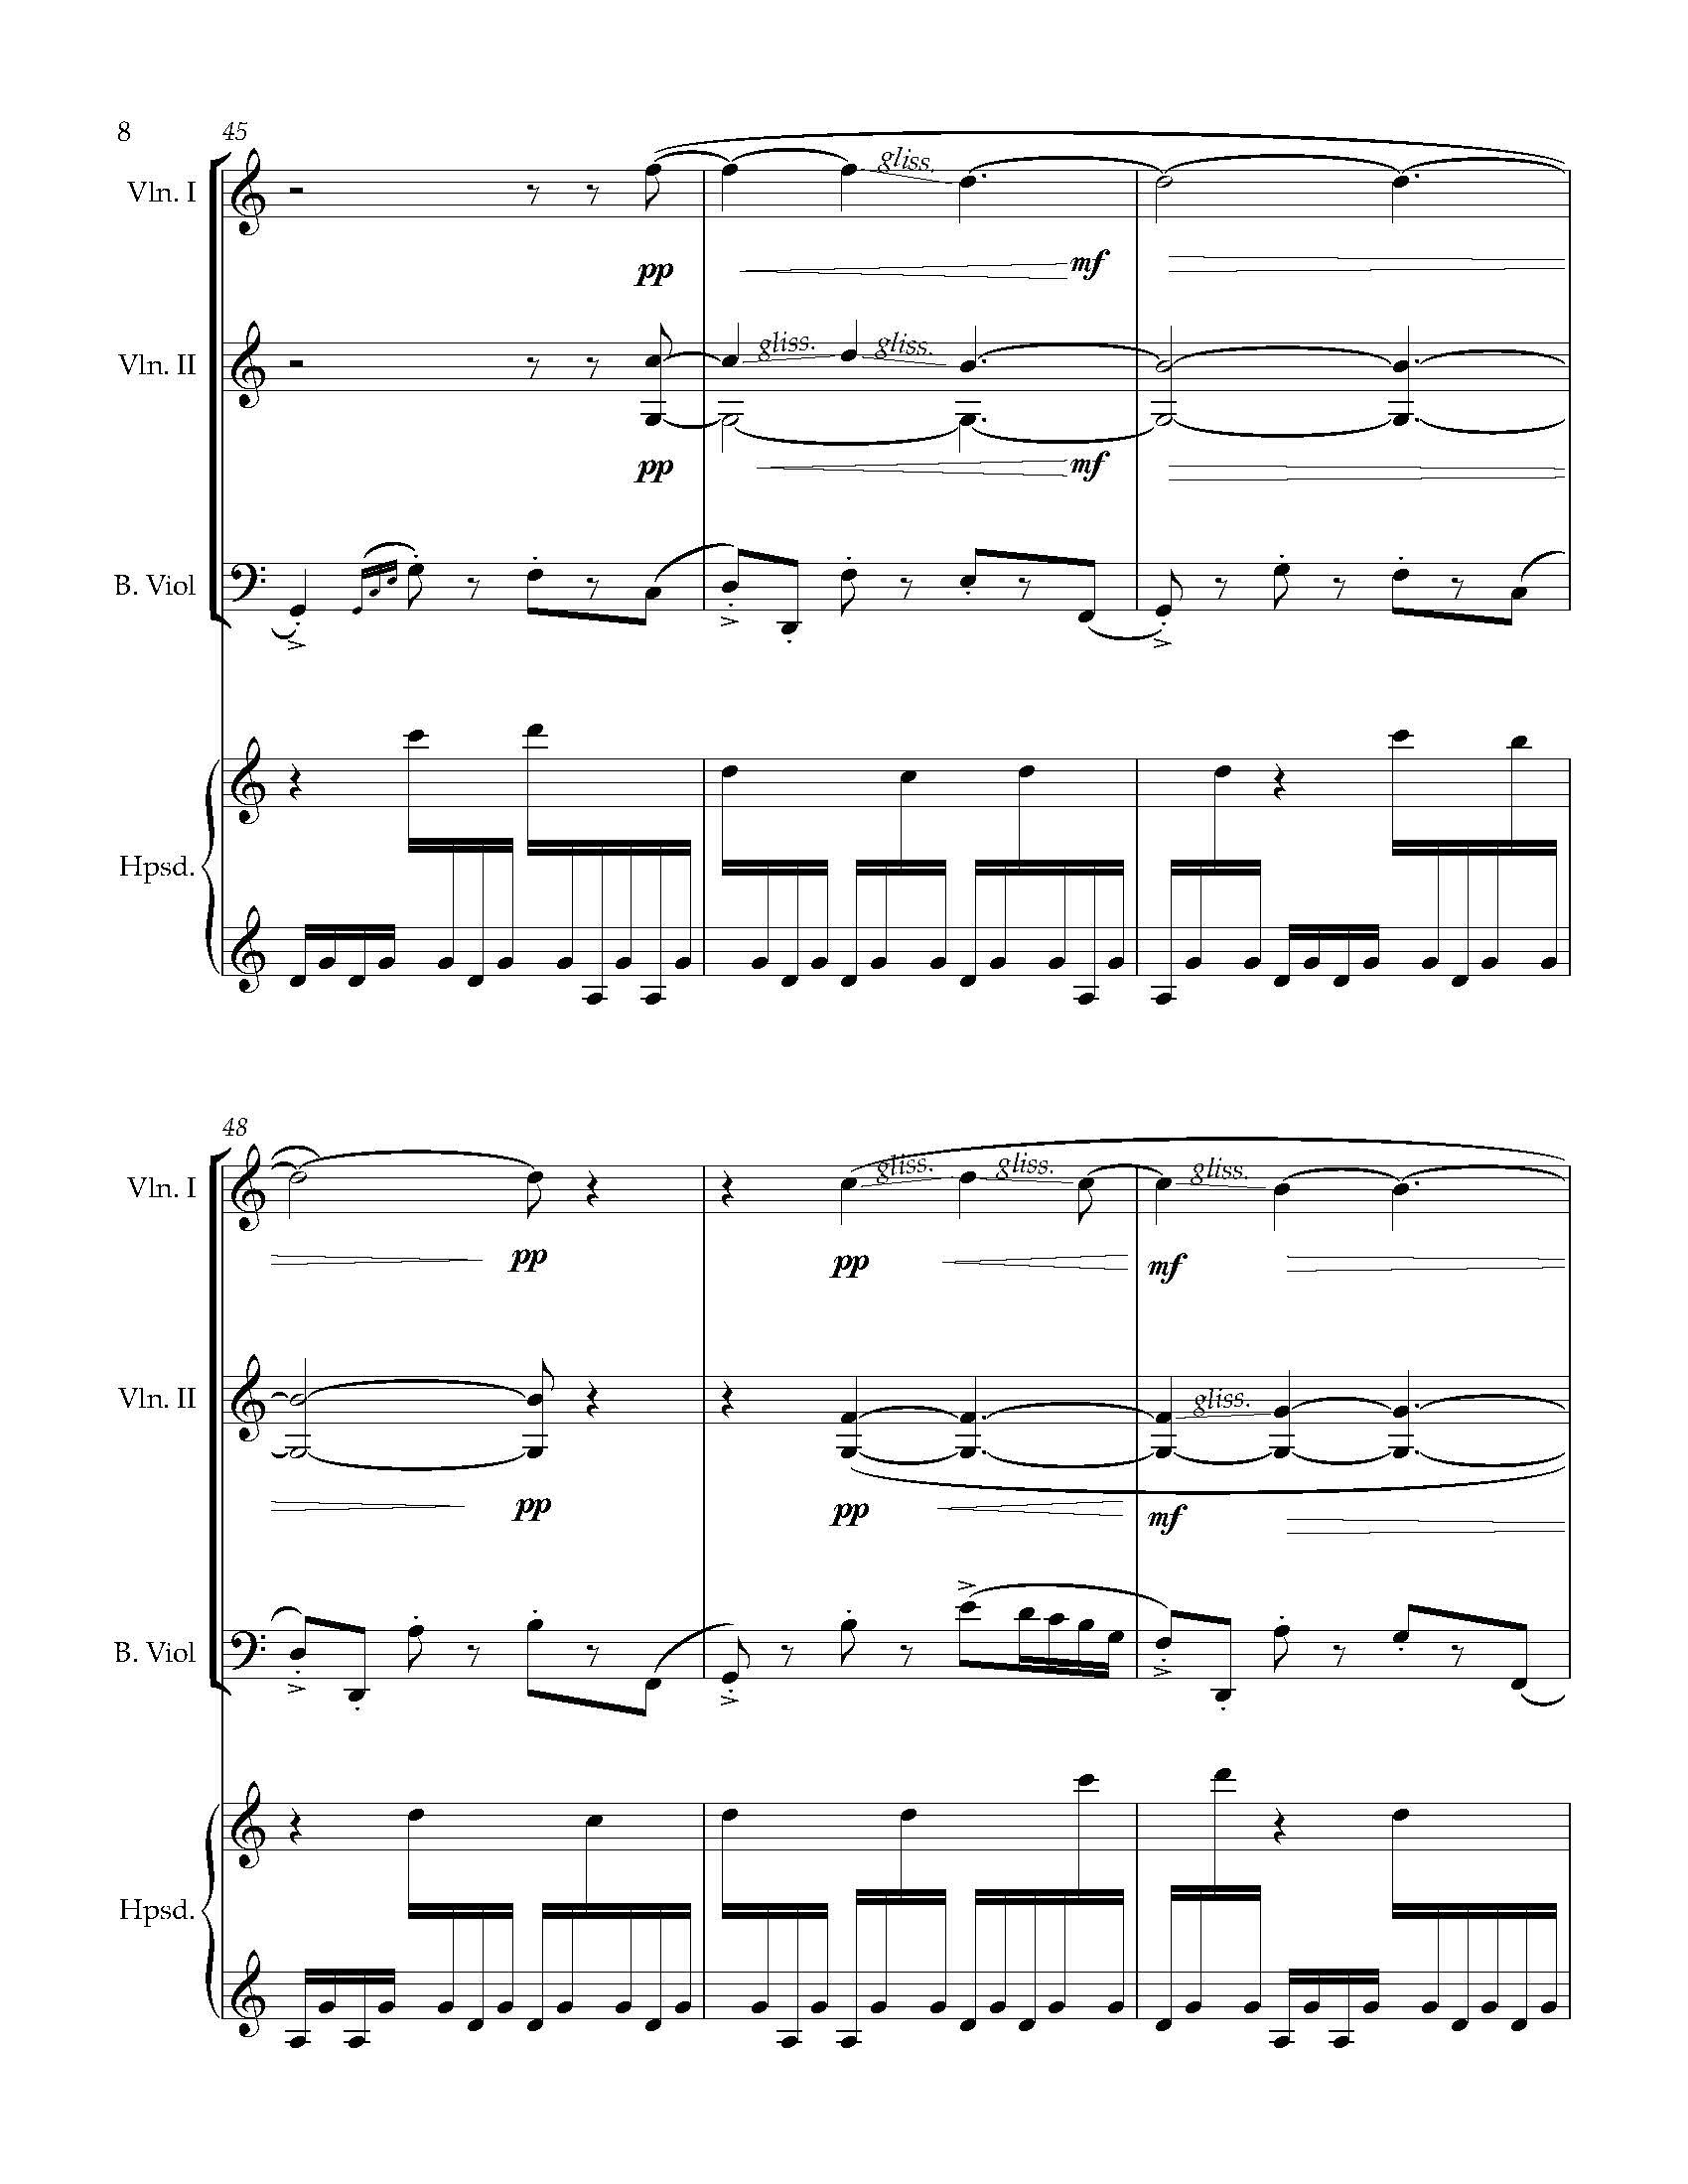 Sonata Sonare - Complete Score_Page_14.jpg